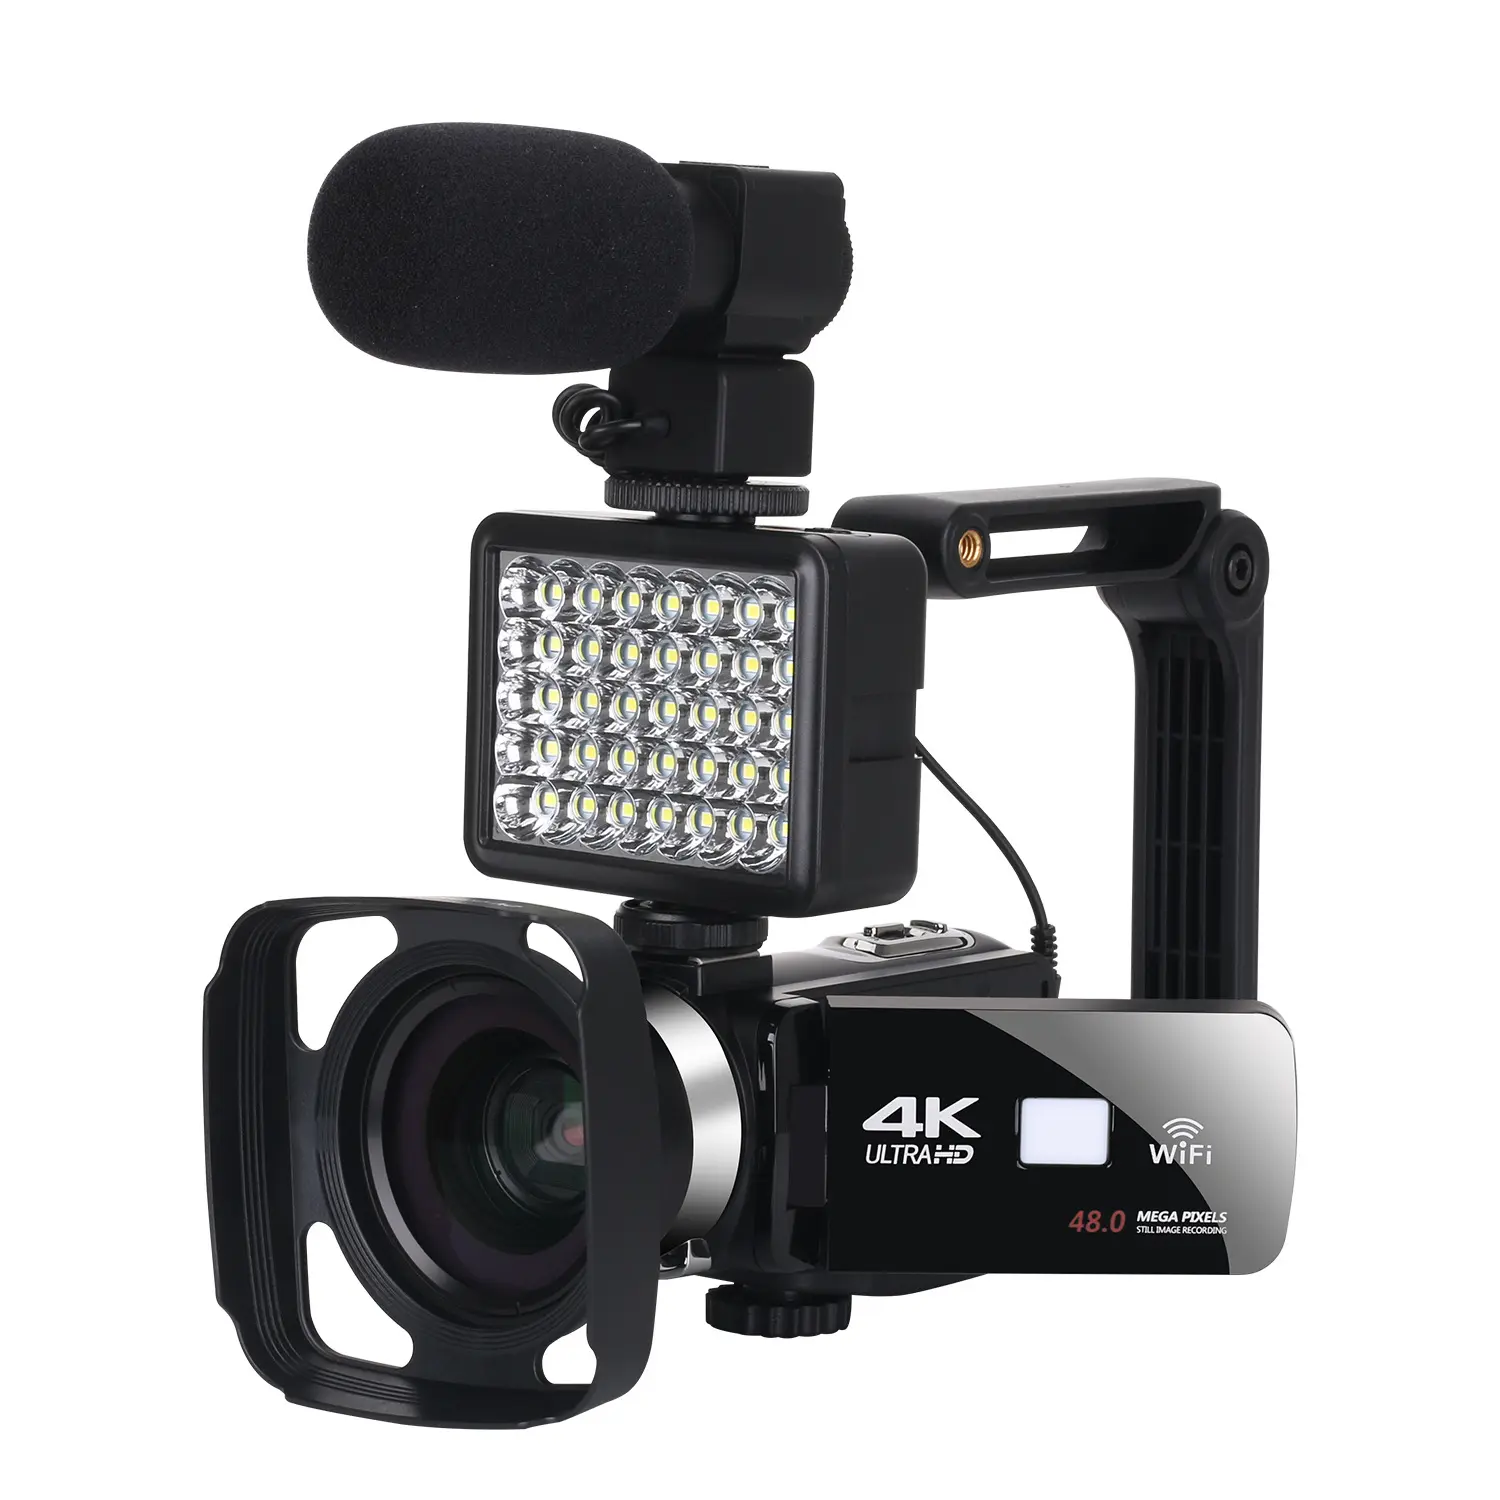 Handycam-cámara de vídeo 4K con visión nocturna WiFi, videocámara para YouTube, transmisión en directo